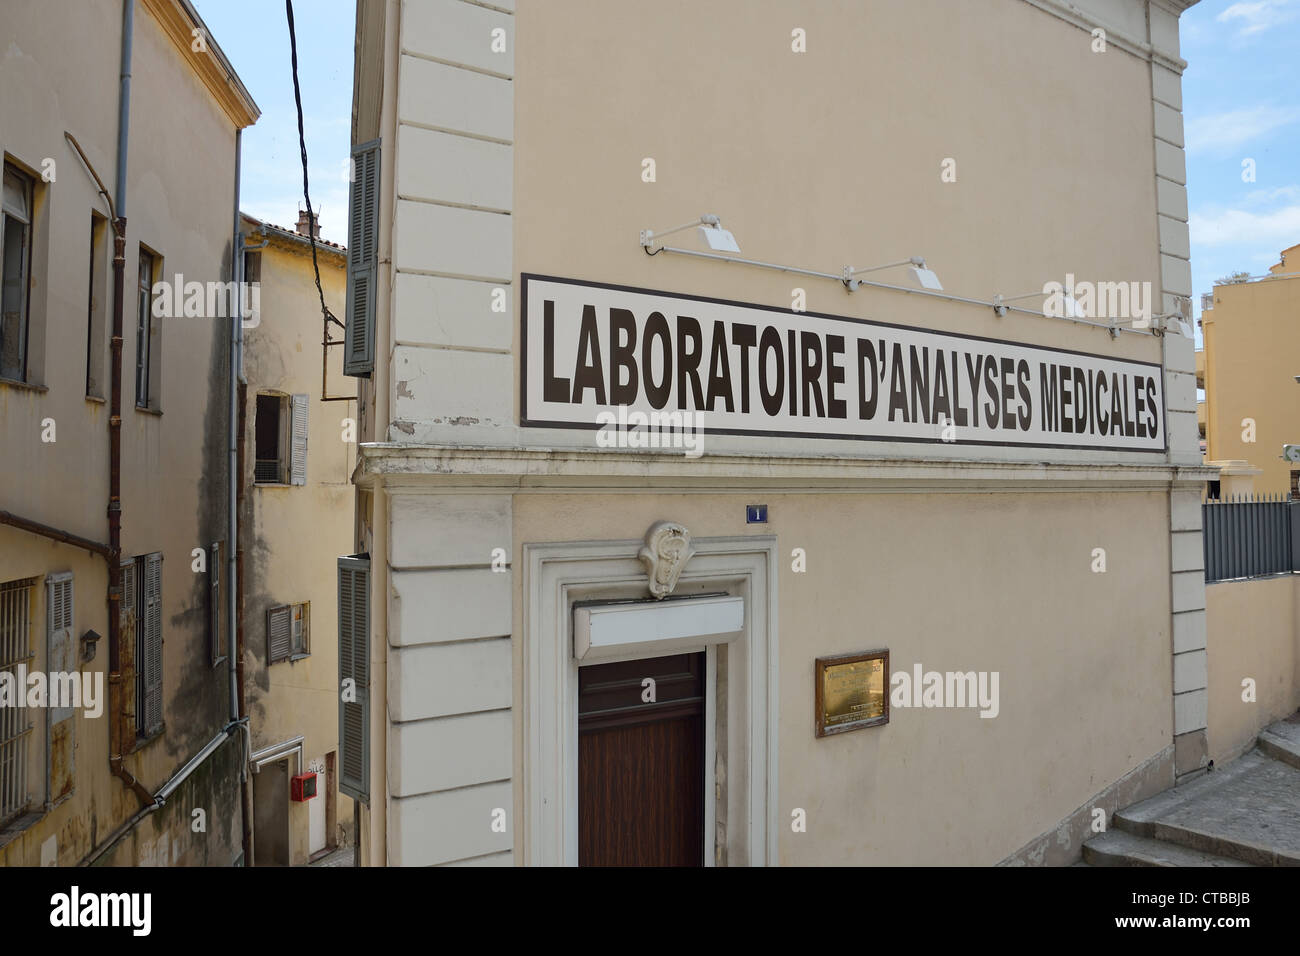 Laboratoire Medicales (medical laboratory), Grasse, Côte d'Azur, Alpes-Maritimes, Provence-Alpes-Côte d'Azur, France Stock Photo